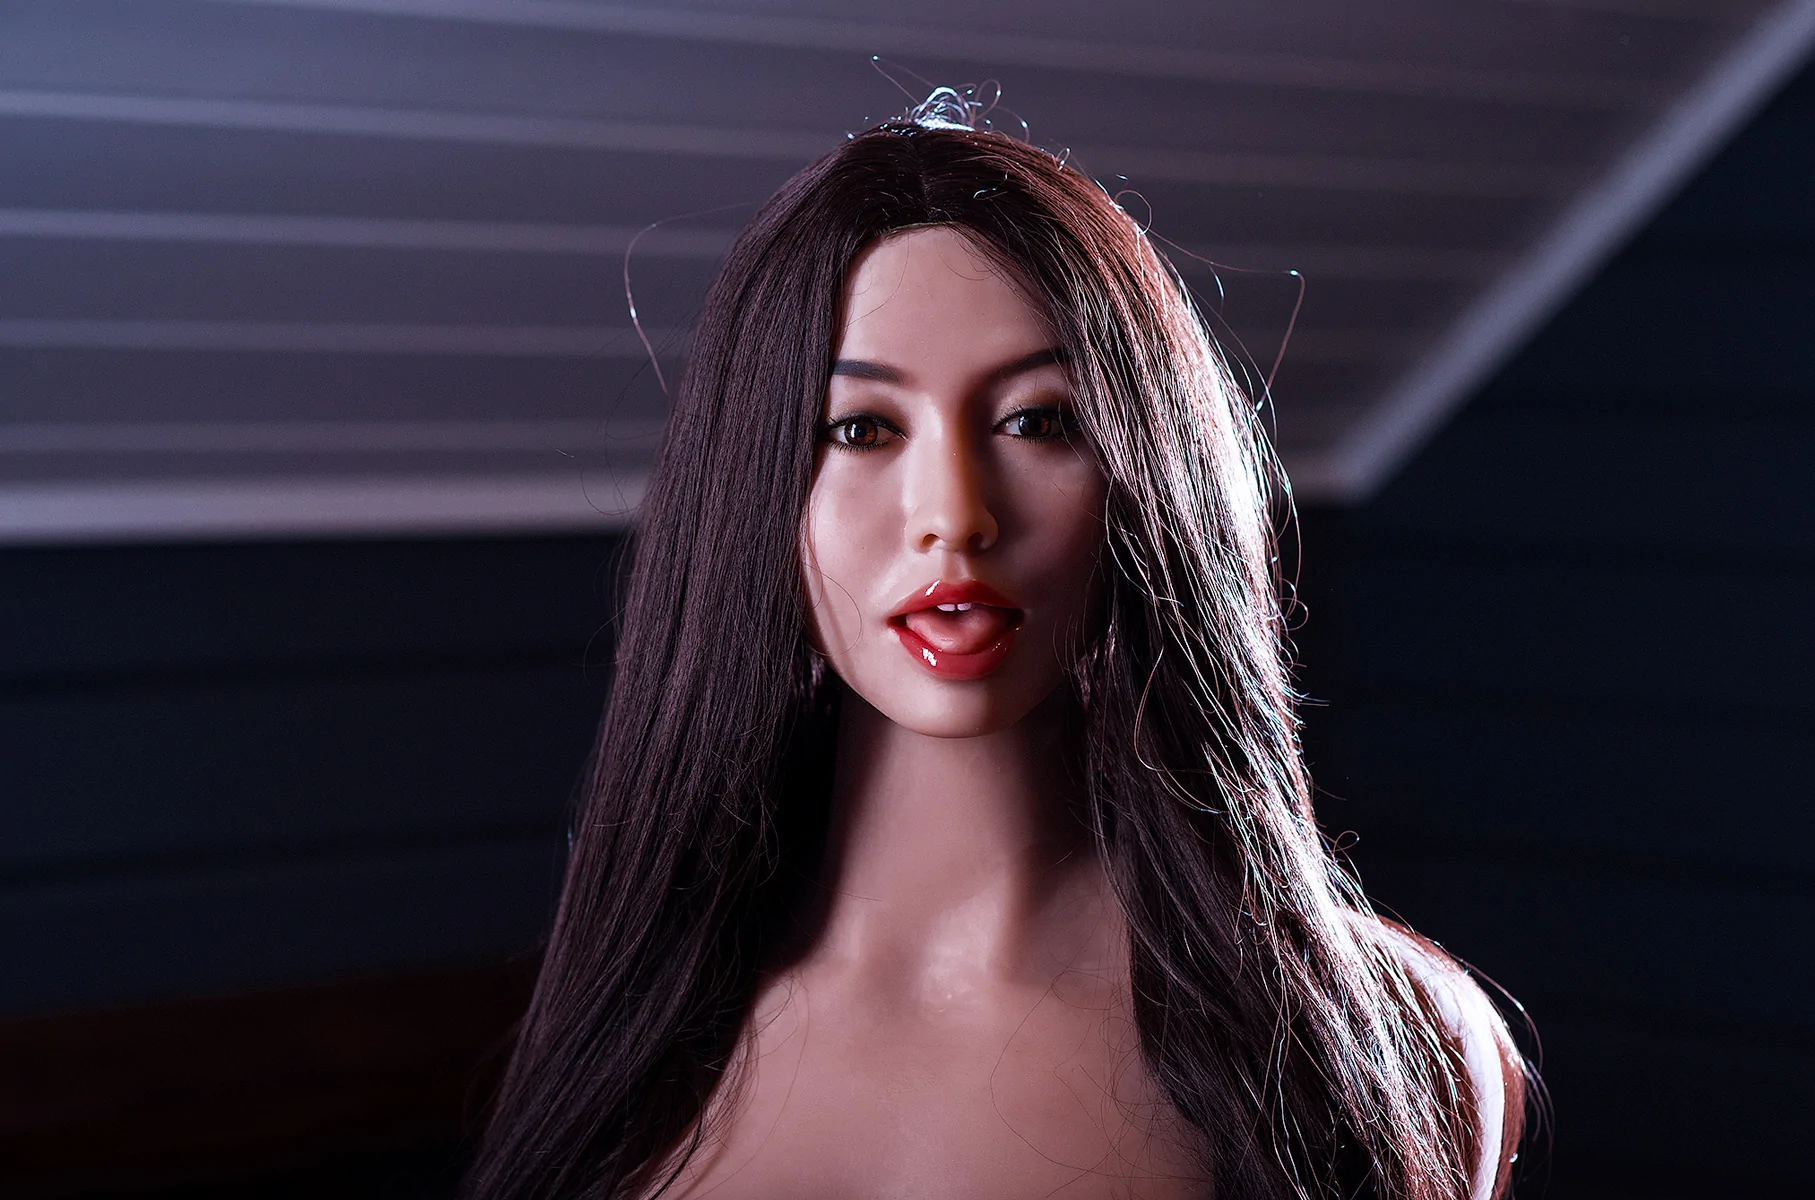 Kiki Cute Asian Sex Doll 2 - Búp bê tình dục ngực phẳng (ngực lép) là gì? Top các sản phẩm bán chạy nhất hiện nay!